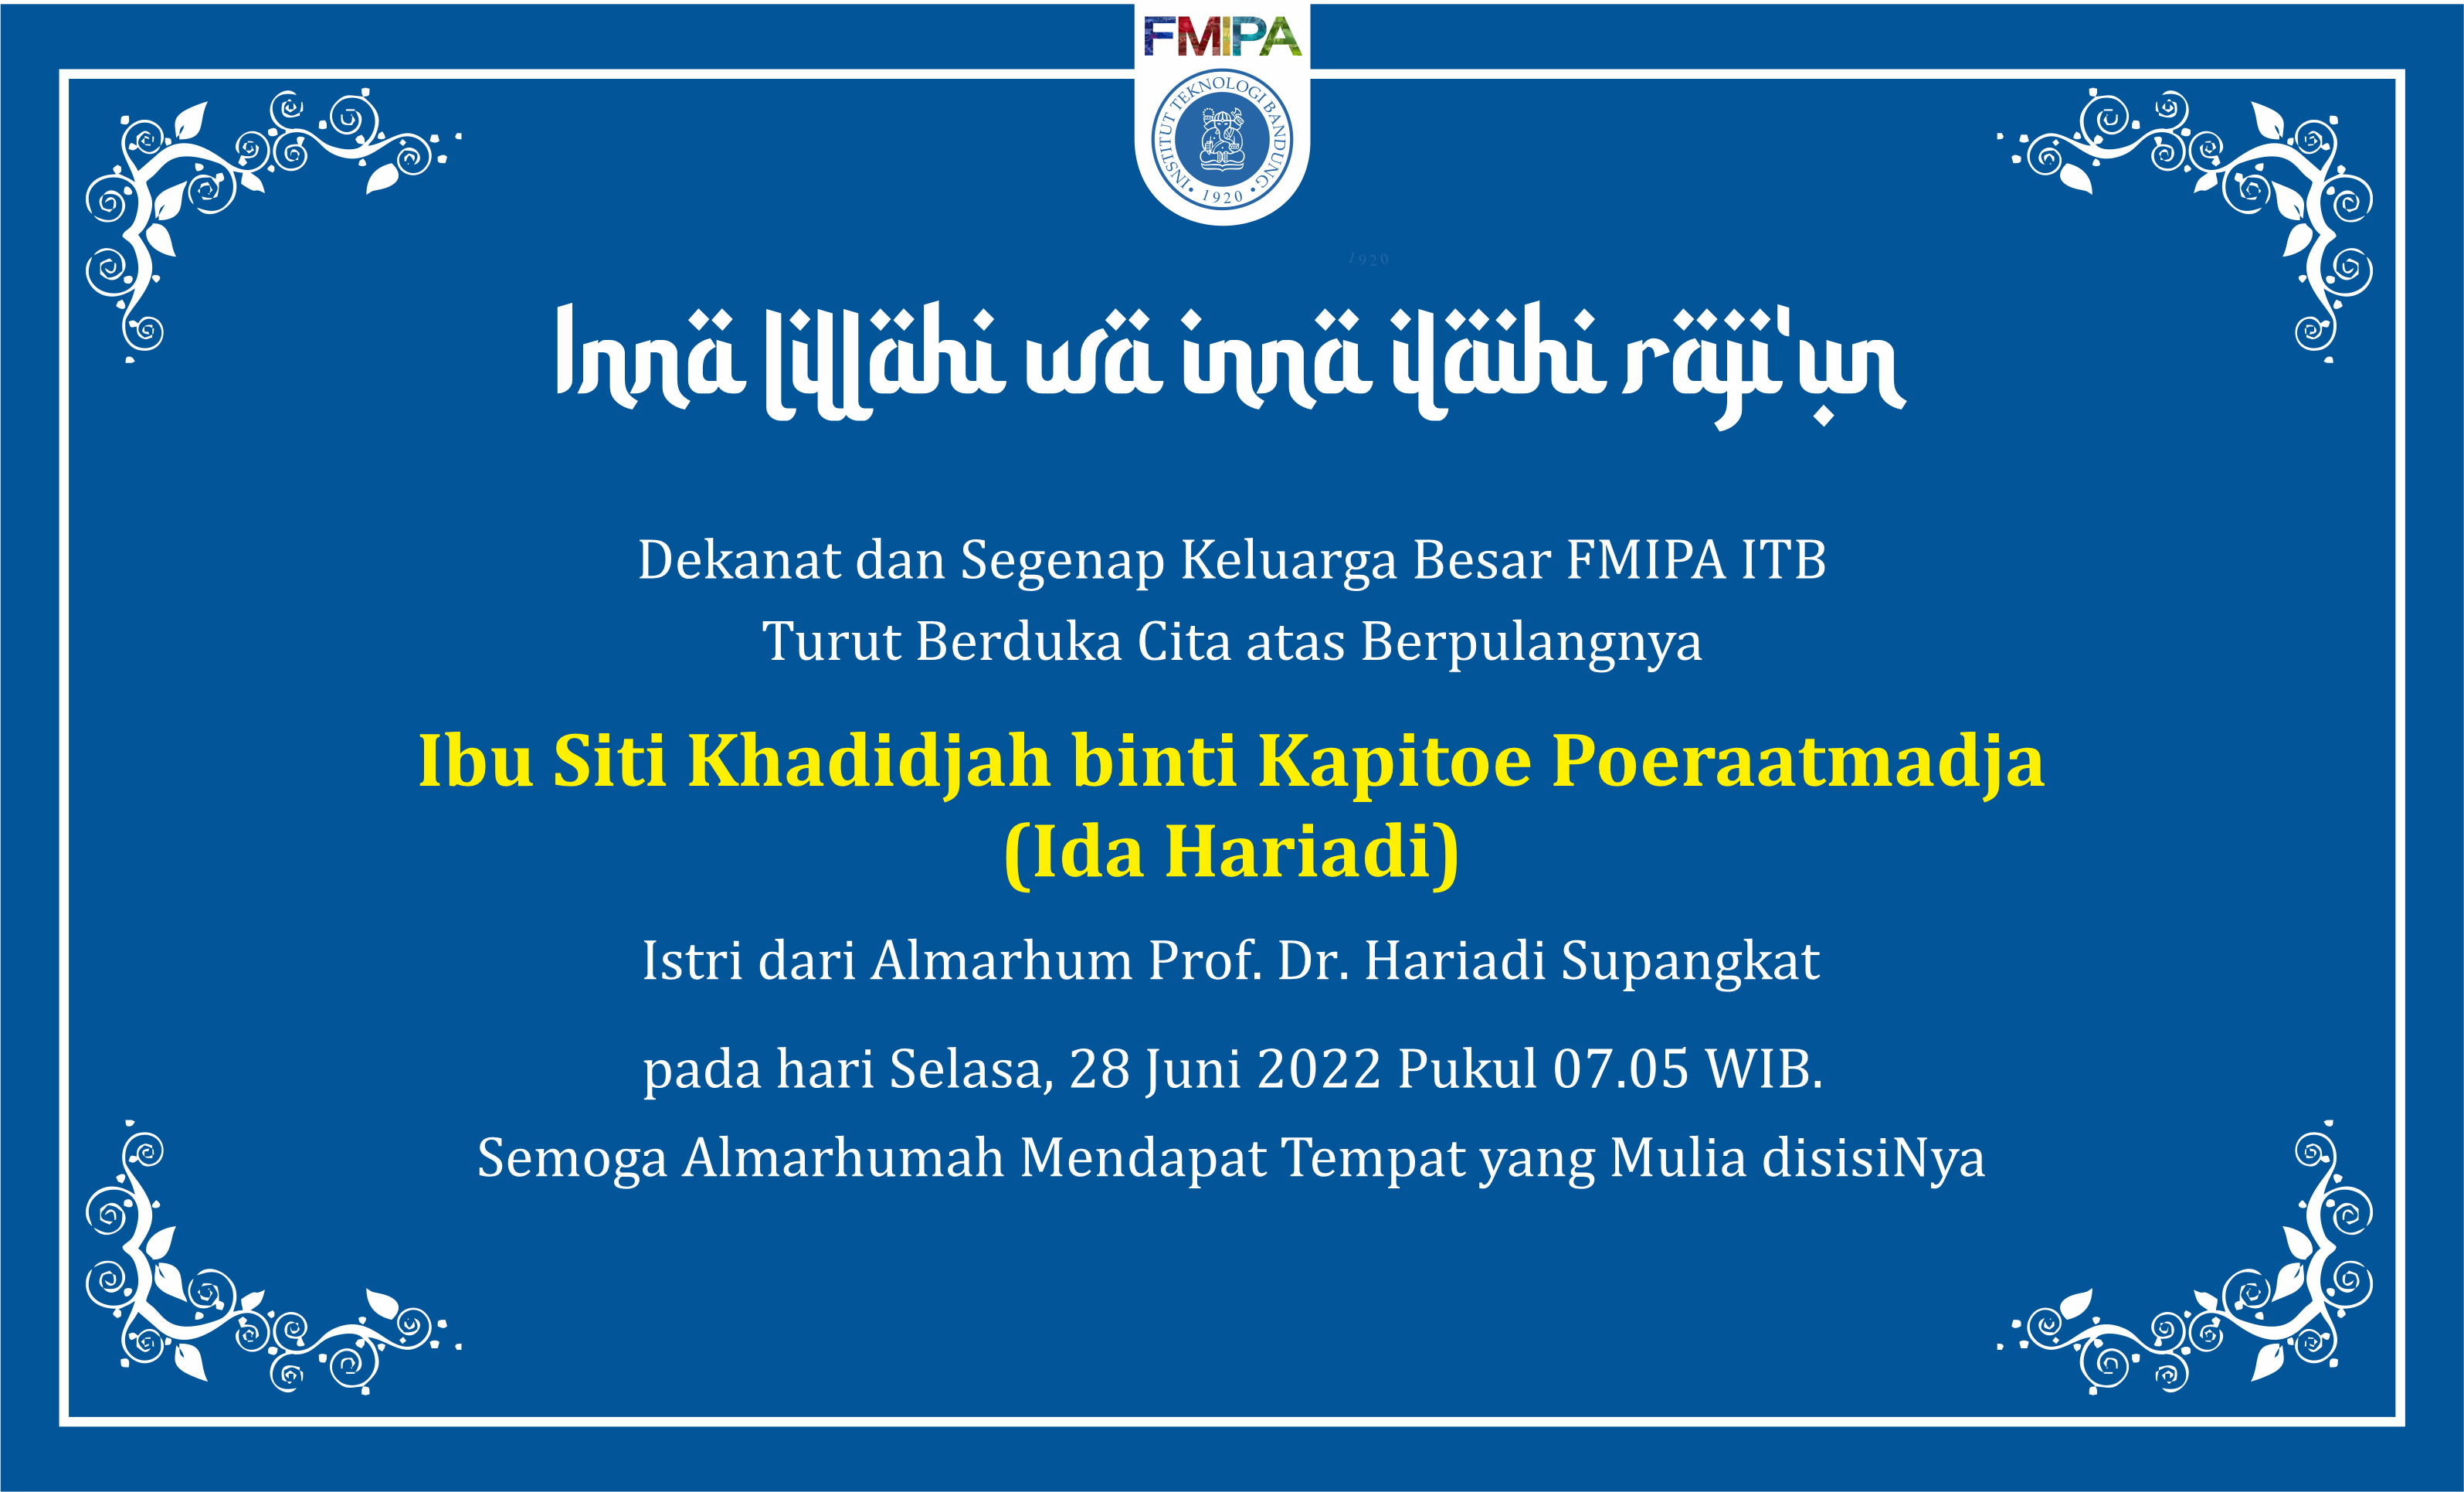 Obituari: Ibu Siti Khadidjah binti Kapitoe Poeraatmadja (Ida Hariadi), Istri dari Almarhum Prof. Dr. Hariadi Supangkat